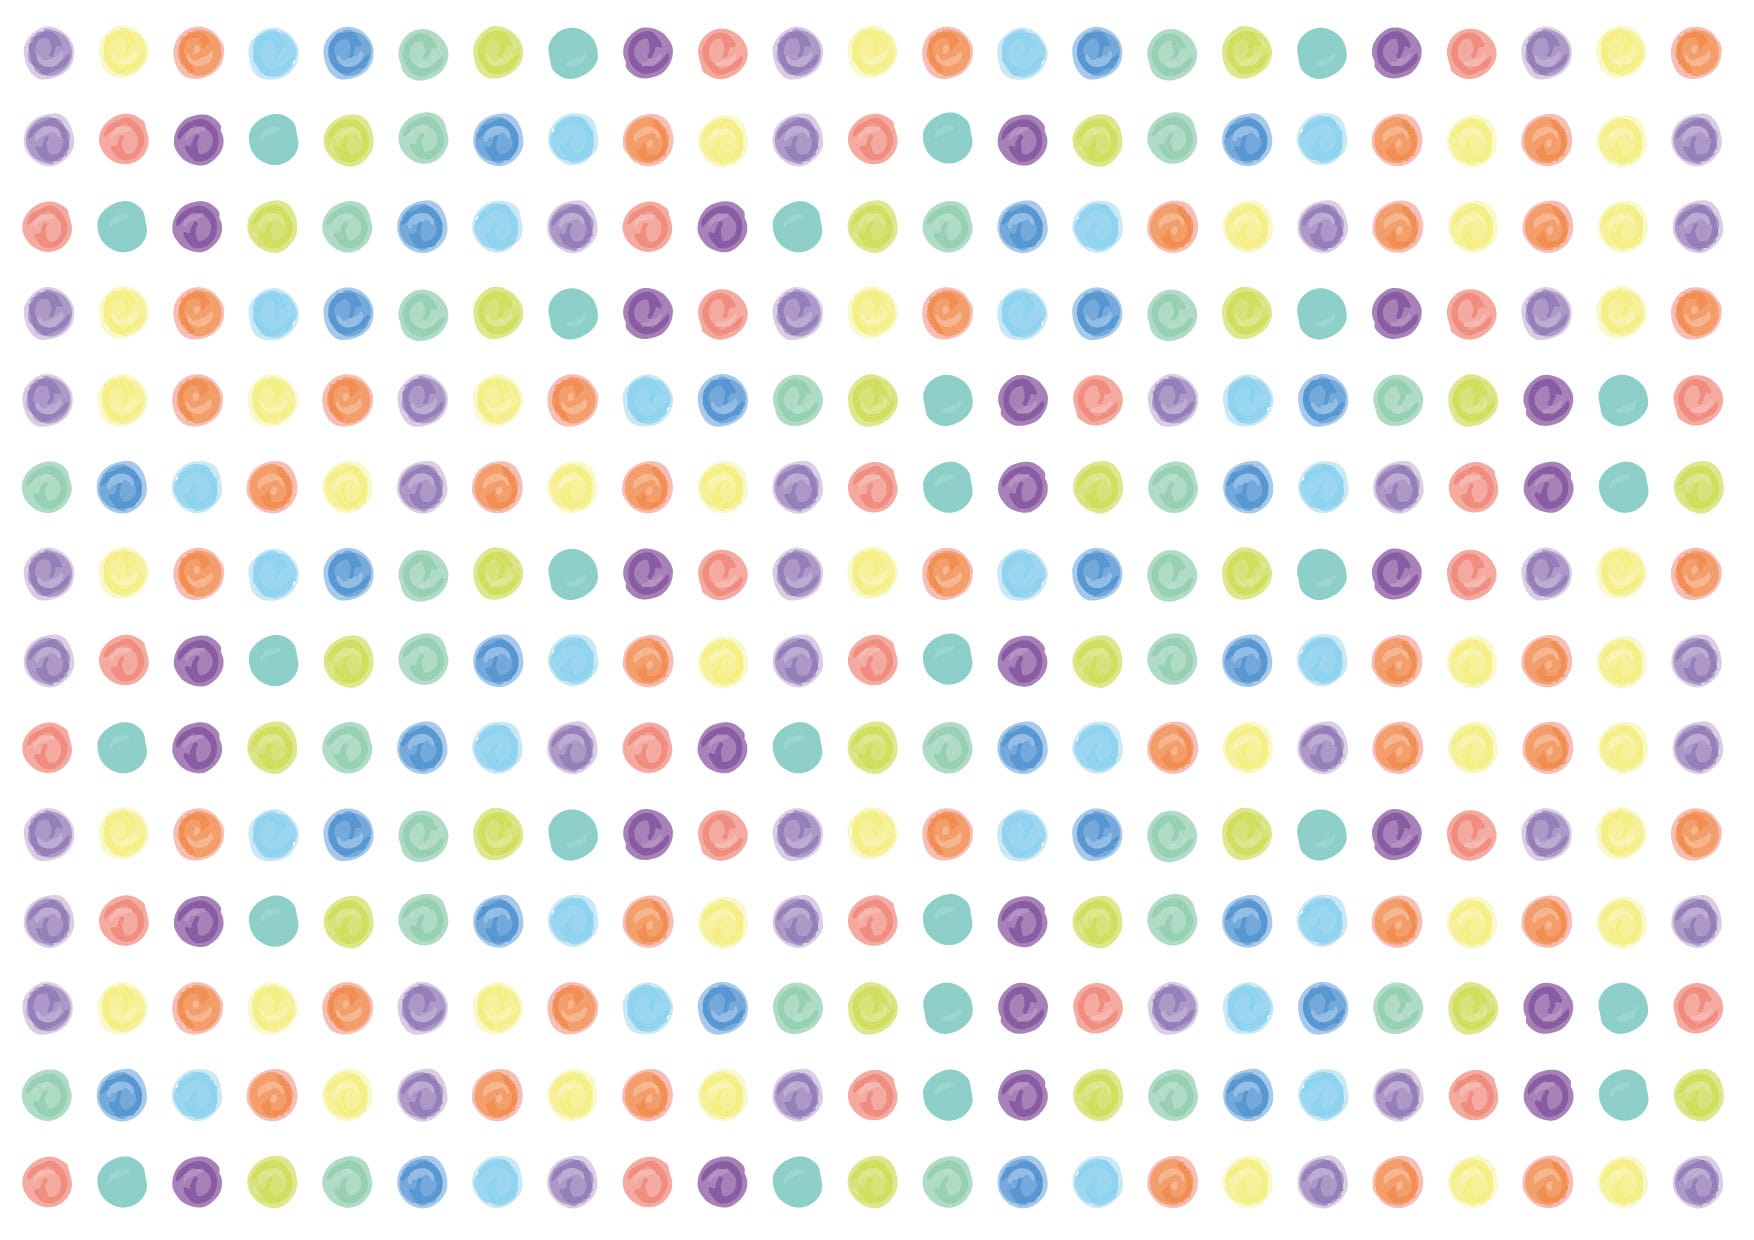 可愛いイラスト無料 水玉 手書き カラフル 背景 Free Illustration Polka Dot Handwritten Colorful Background 公式 イラストダウンロード